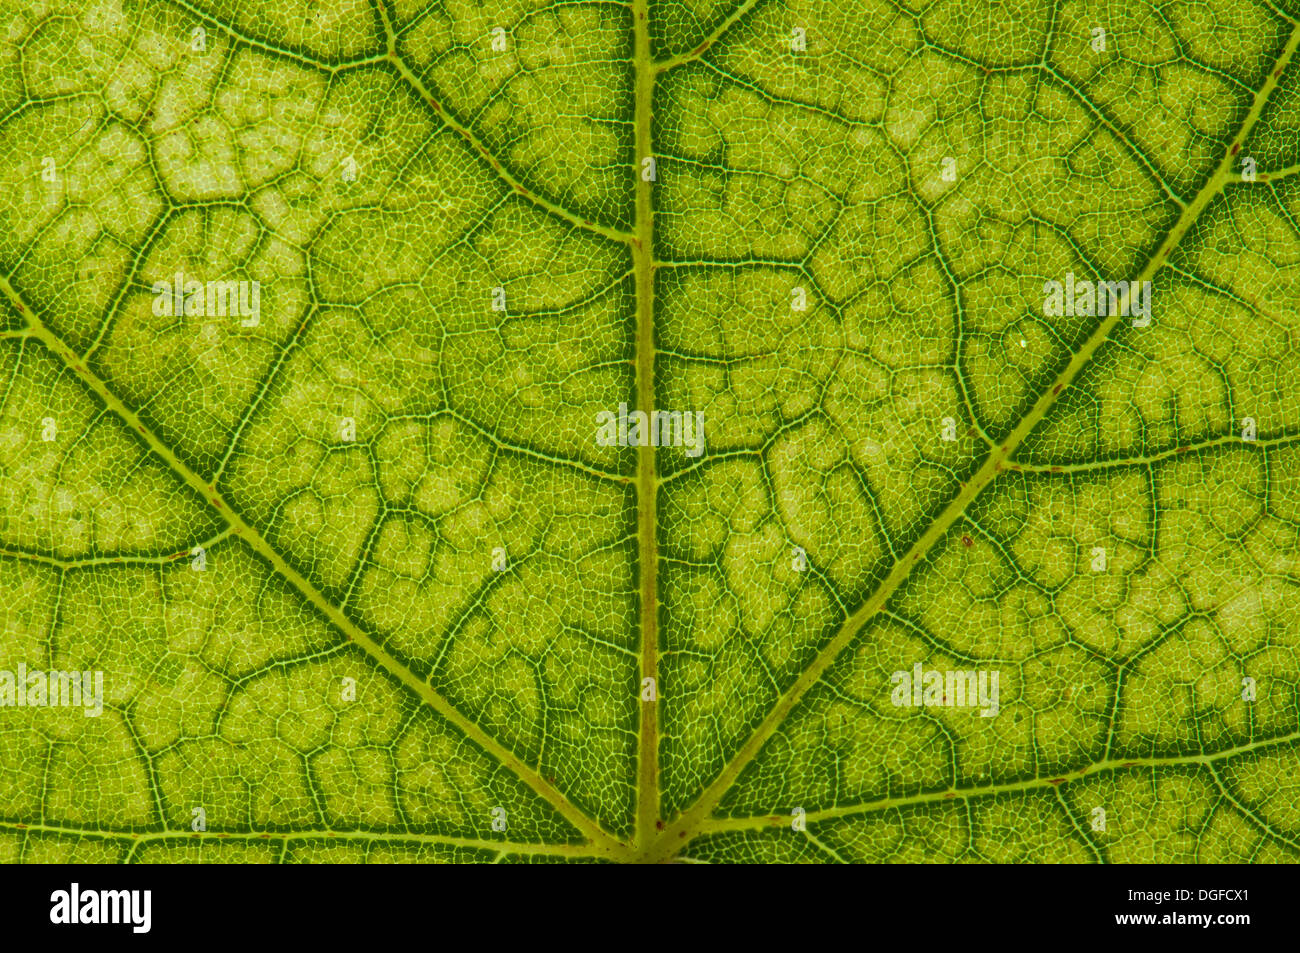 L'érable (Acer sp.) structure des feuilles en lumière transmise, coloration d'automne début, détail, centre-ville, Frankfurt am Main Banque D'Images